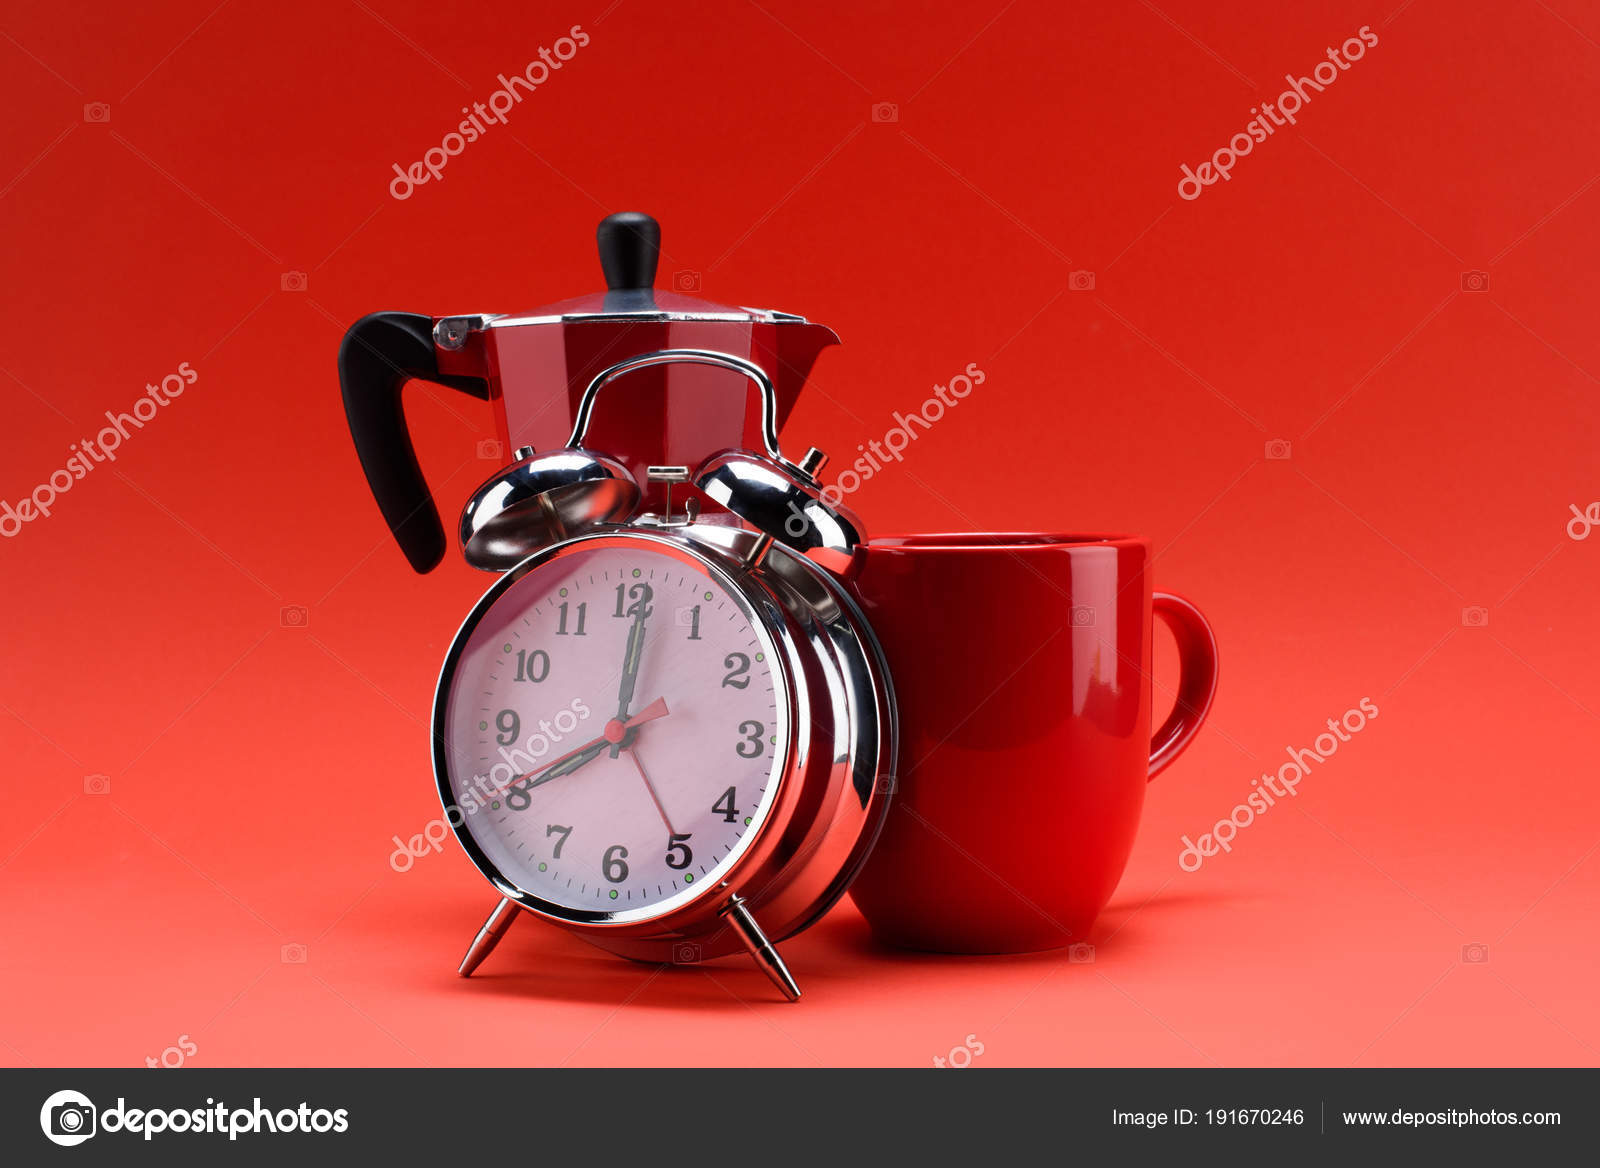 https://st3.depositphotos.com/12985656/19167/i/1600/depositphotos_191670246-stock-photo-close-view-coffee-maker-alarm.jpg